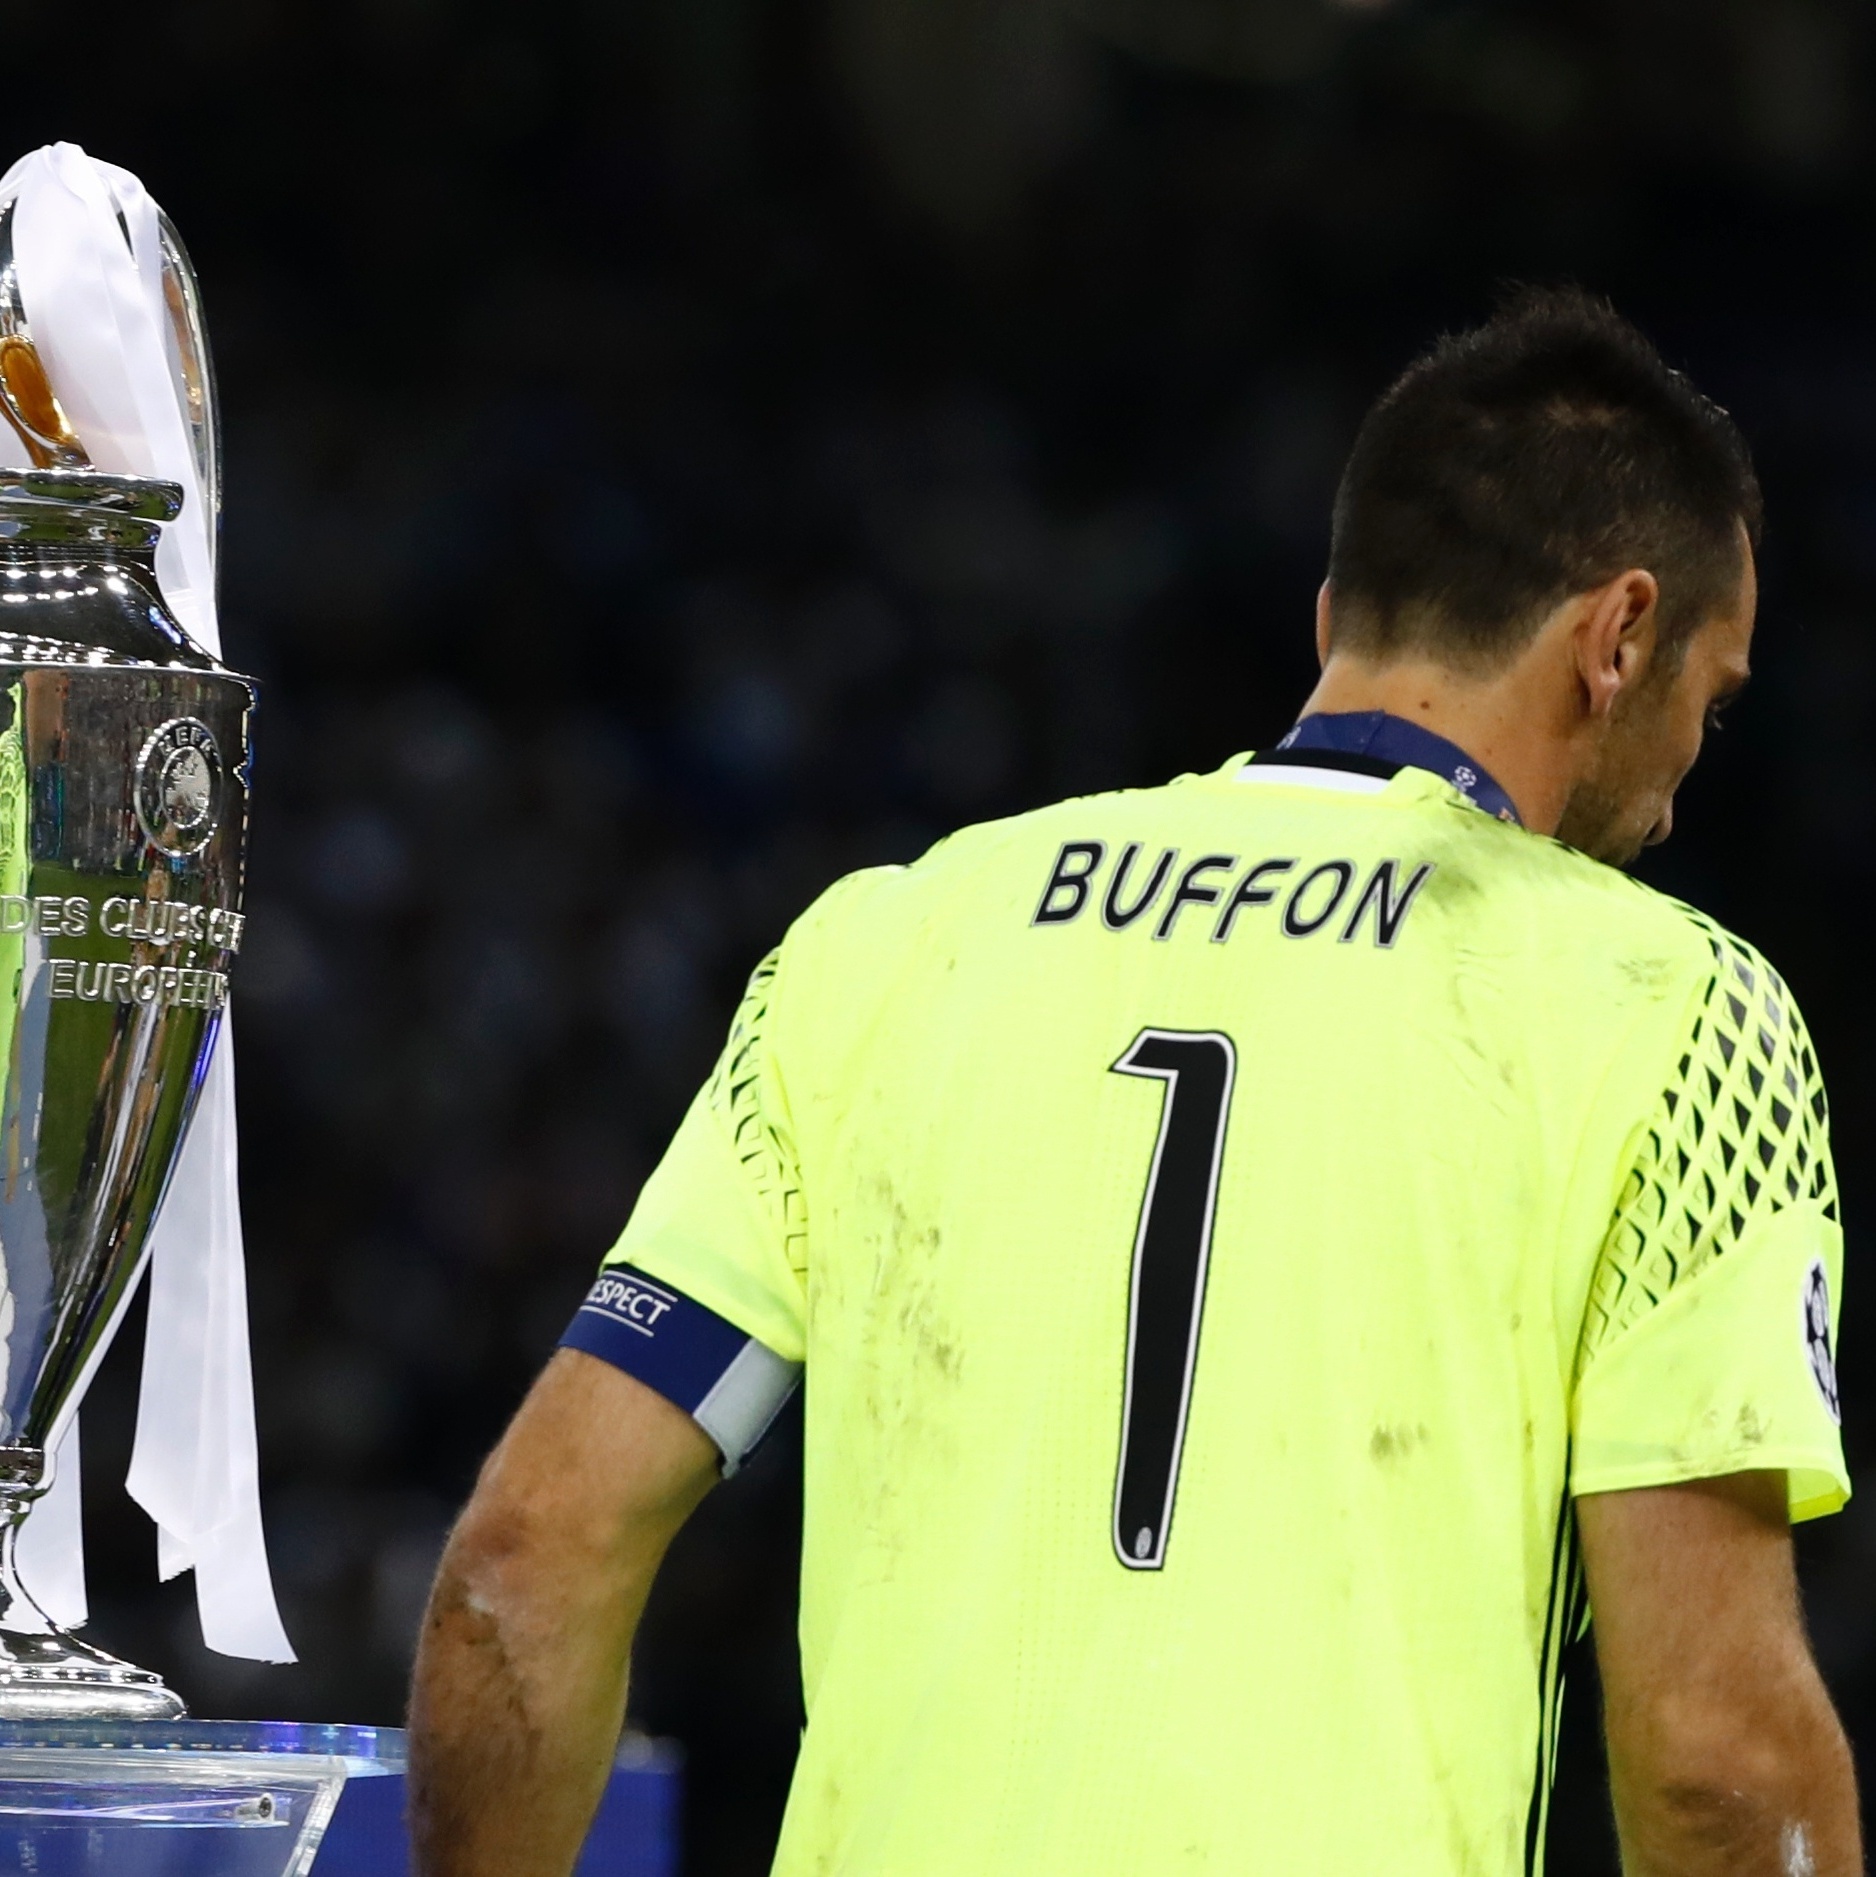 Futebol pelo Mundo on X: UEFA Champions League. Todas as edições,  campeões, vices e placar das finais.  / X